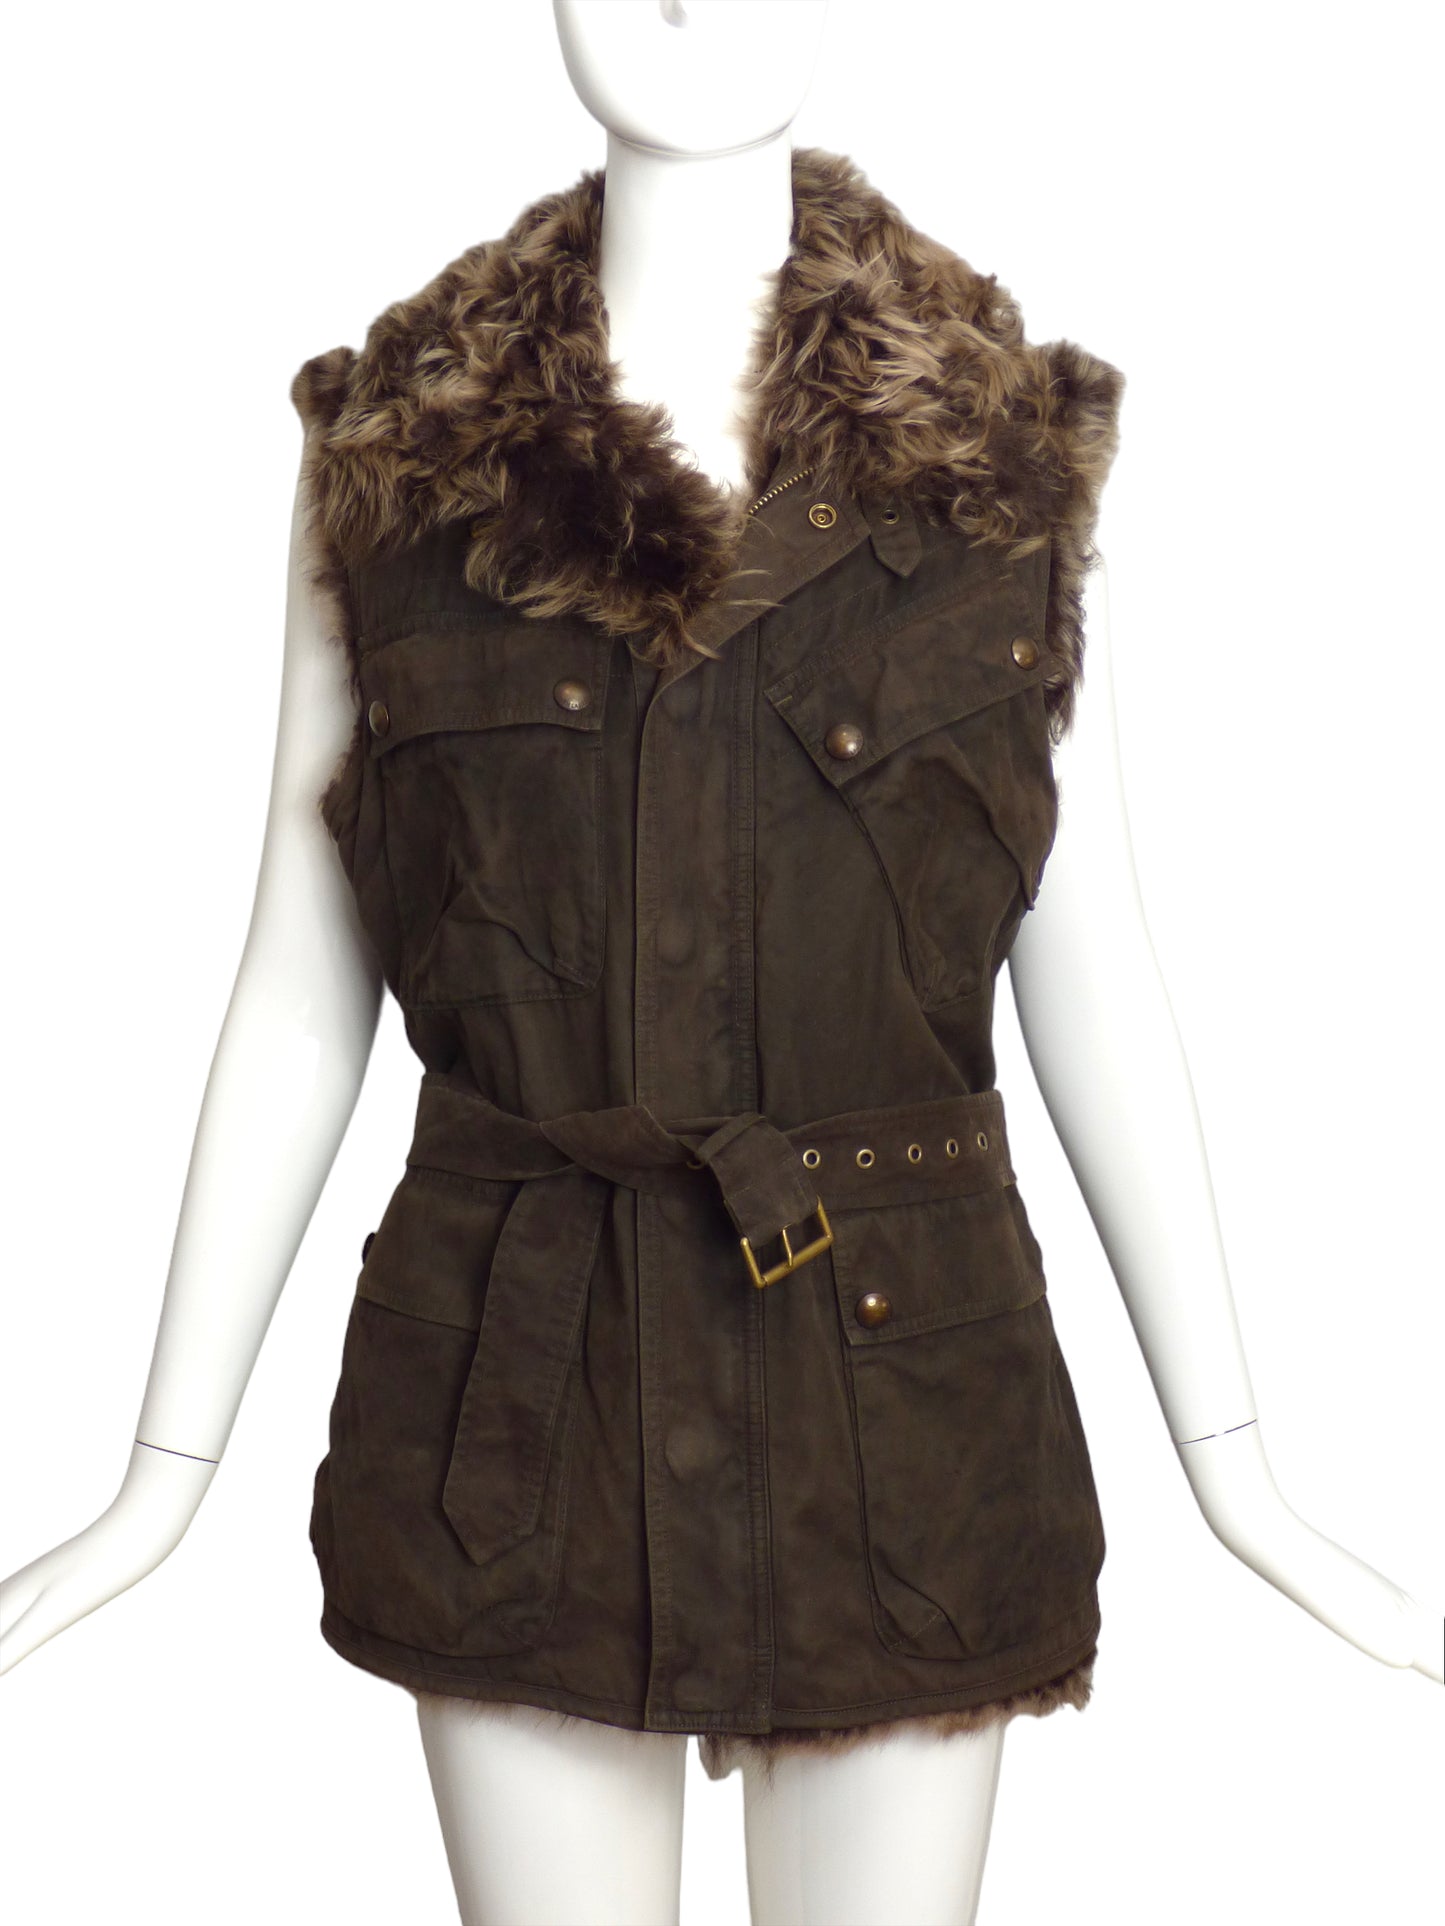 RALPH LAUREN- Cotton & Fur Vest, Size 8